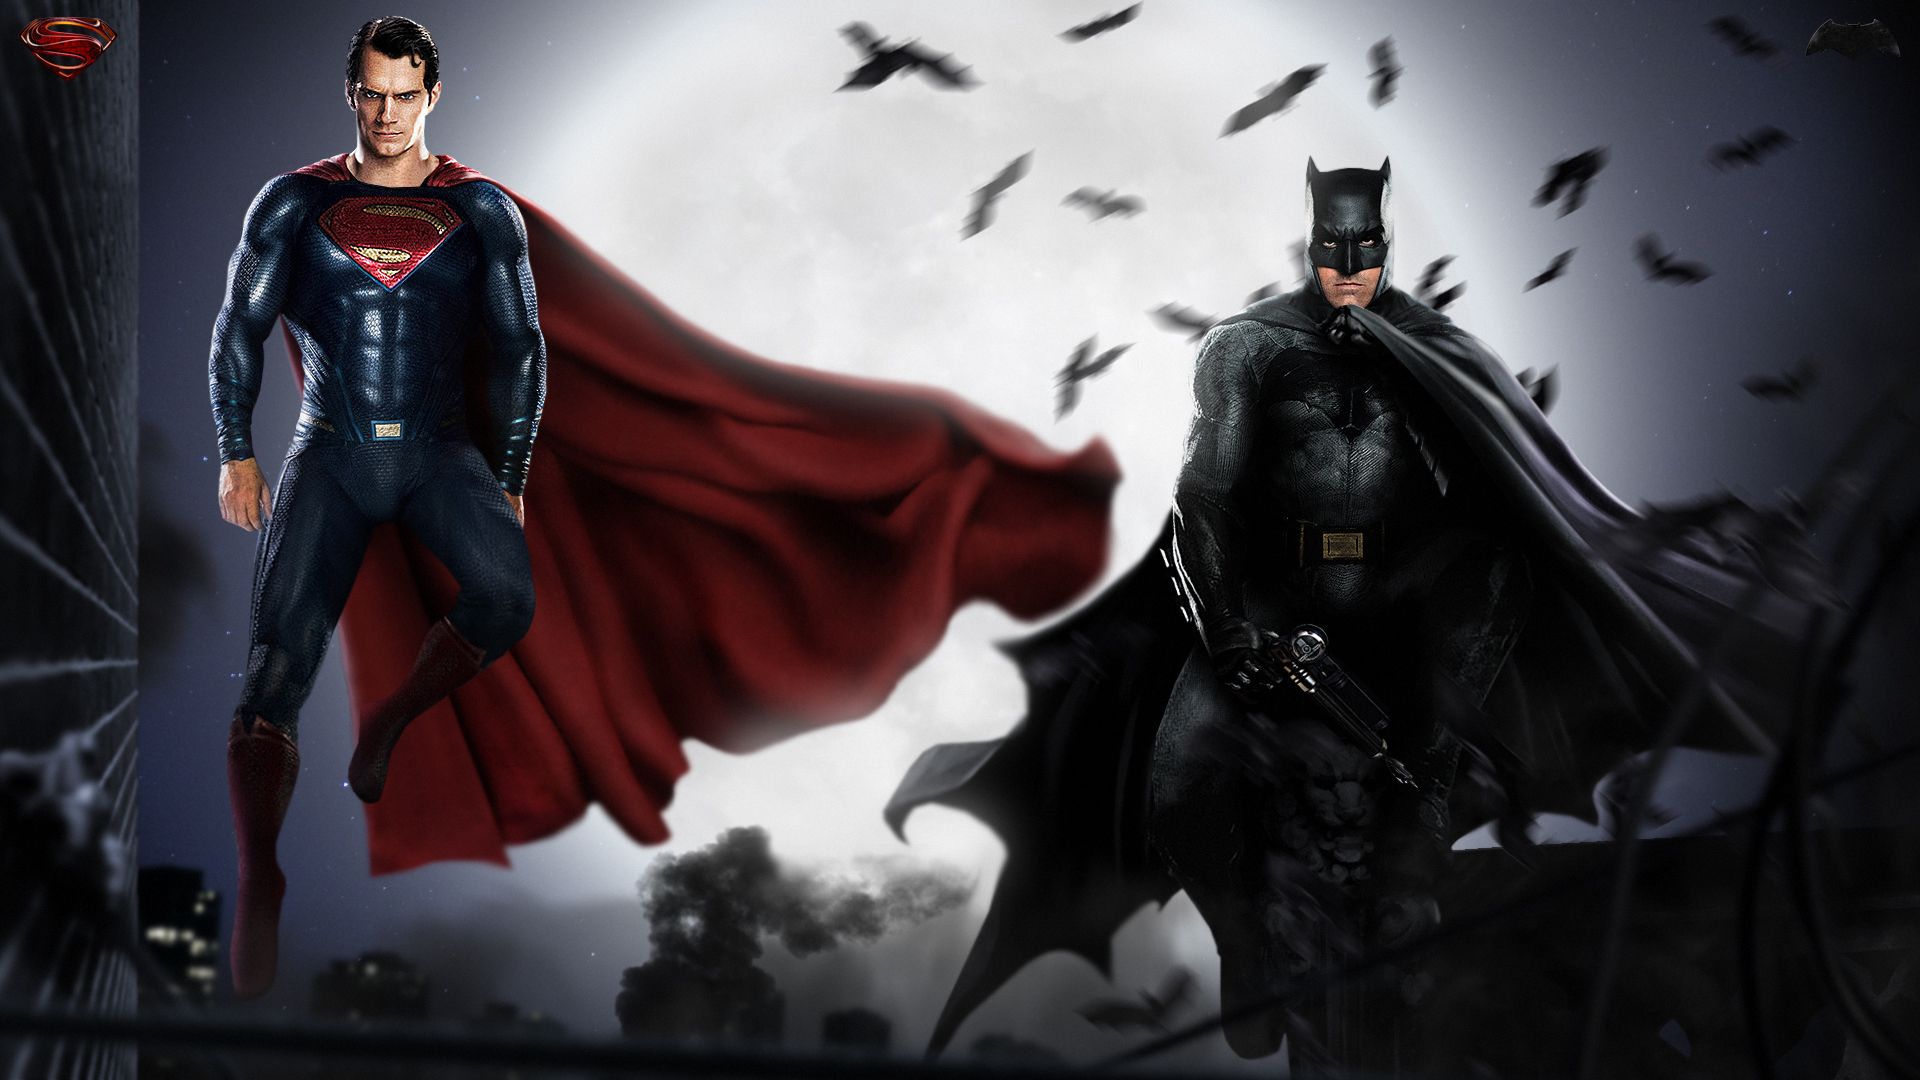 HQ Batman Vs Superman Wallpaper Full HD Pictures